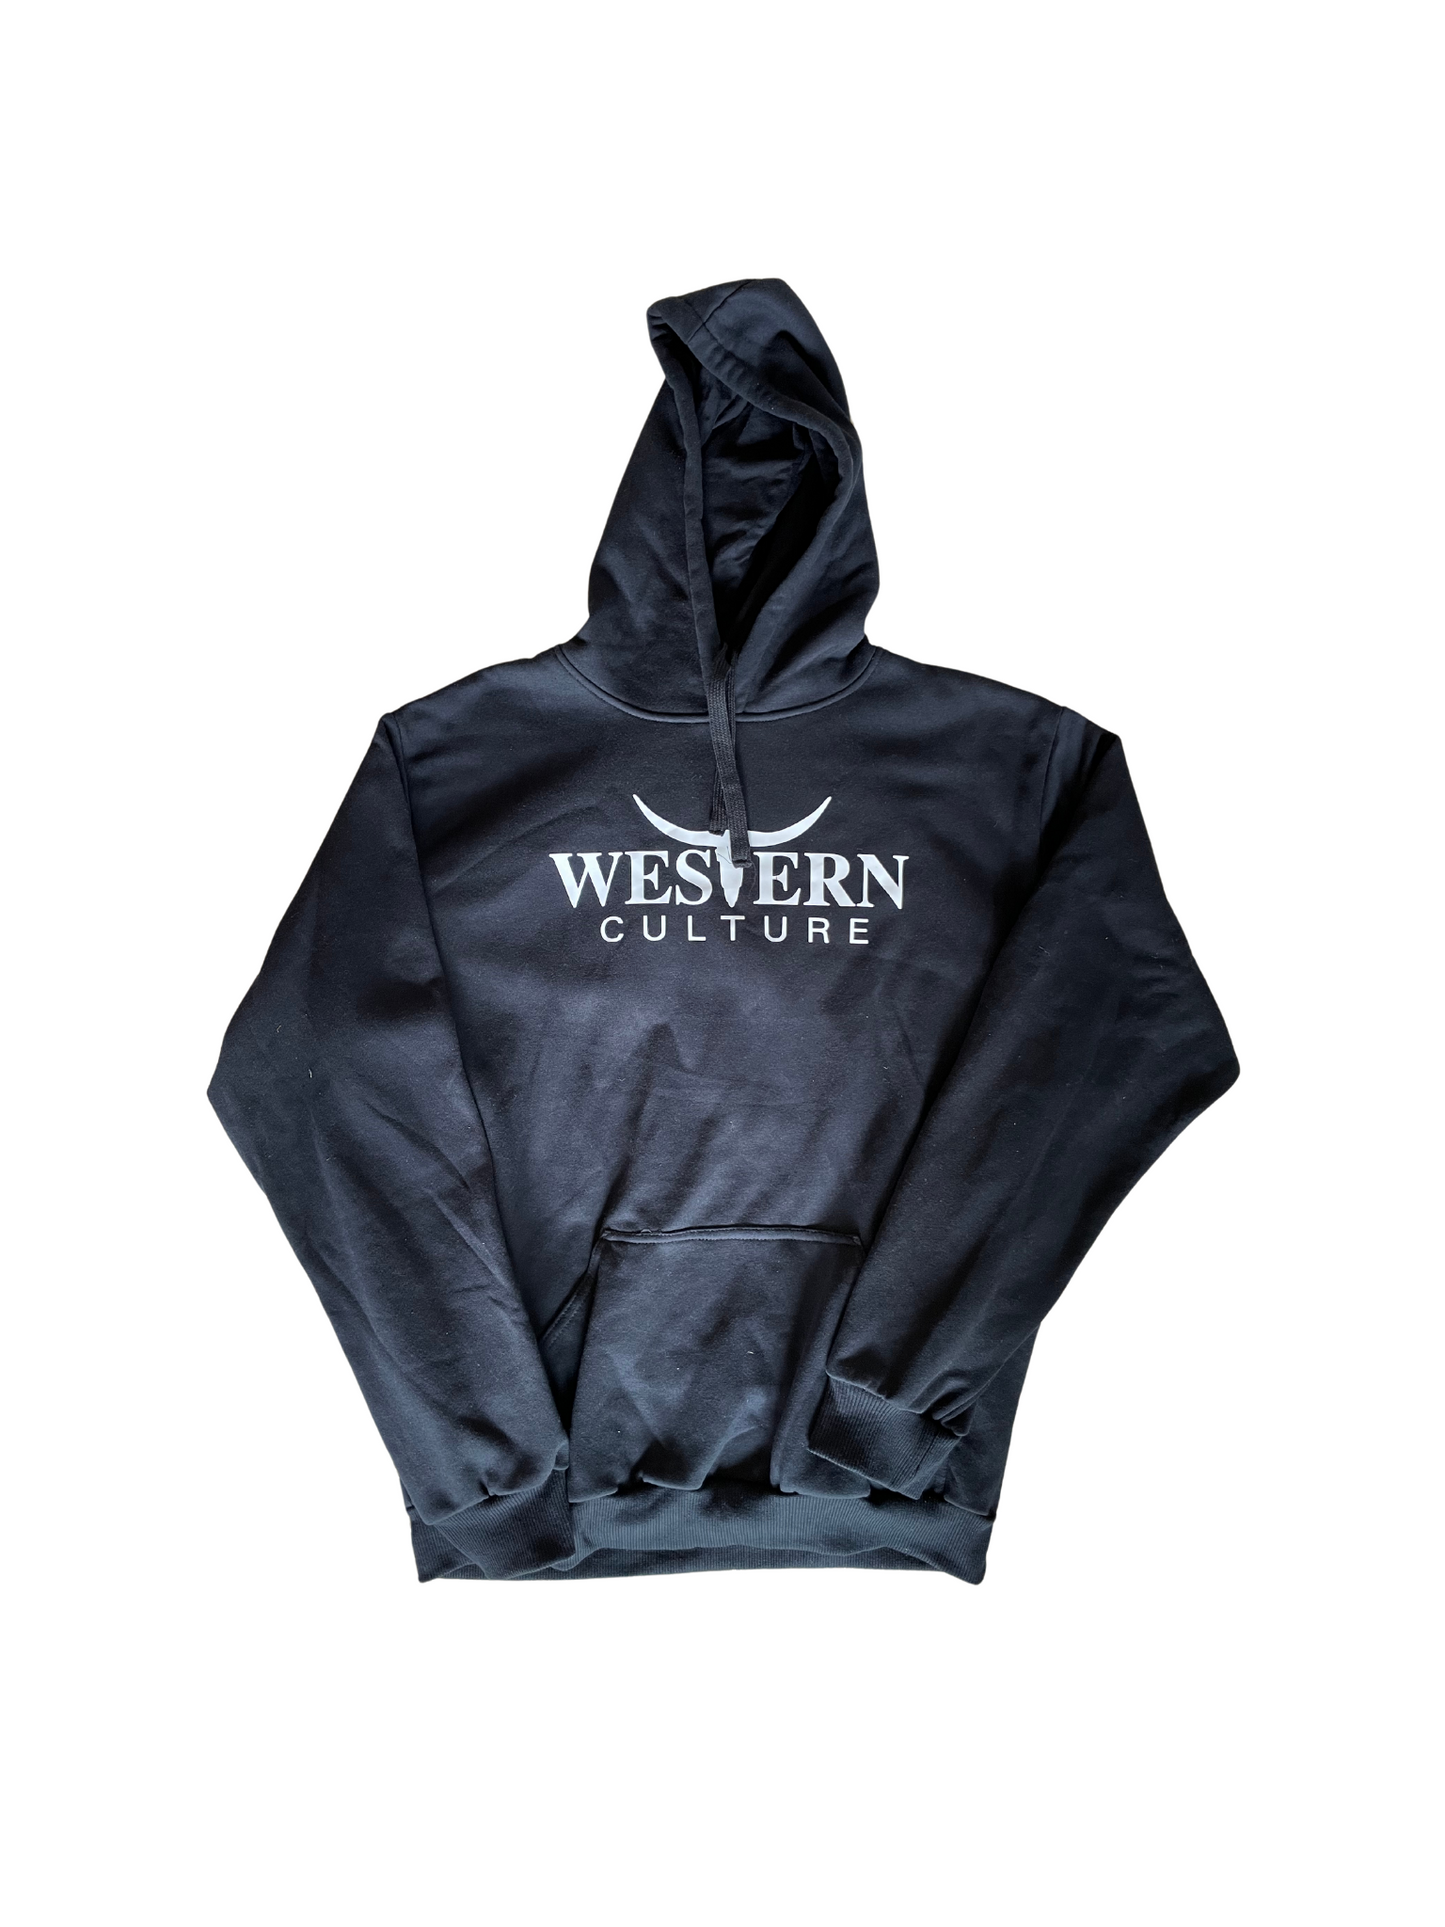 Black hoodie jumper-Western Culture Leather